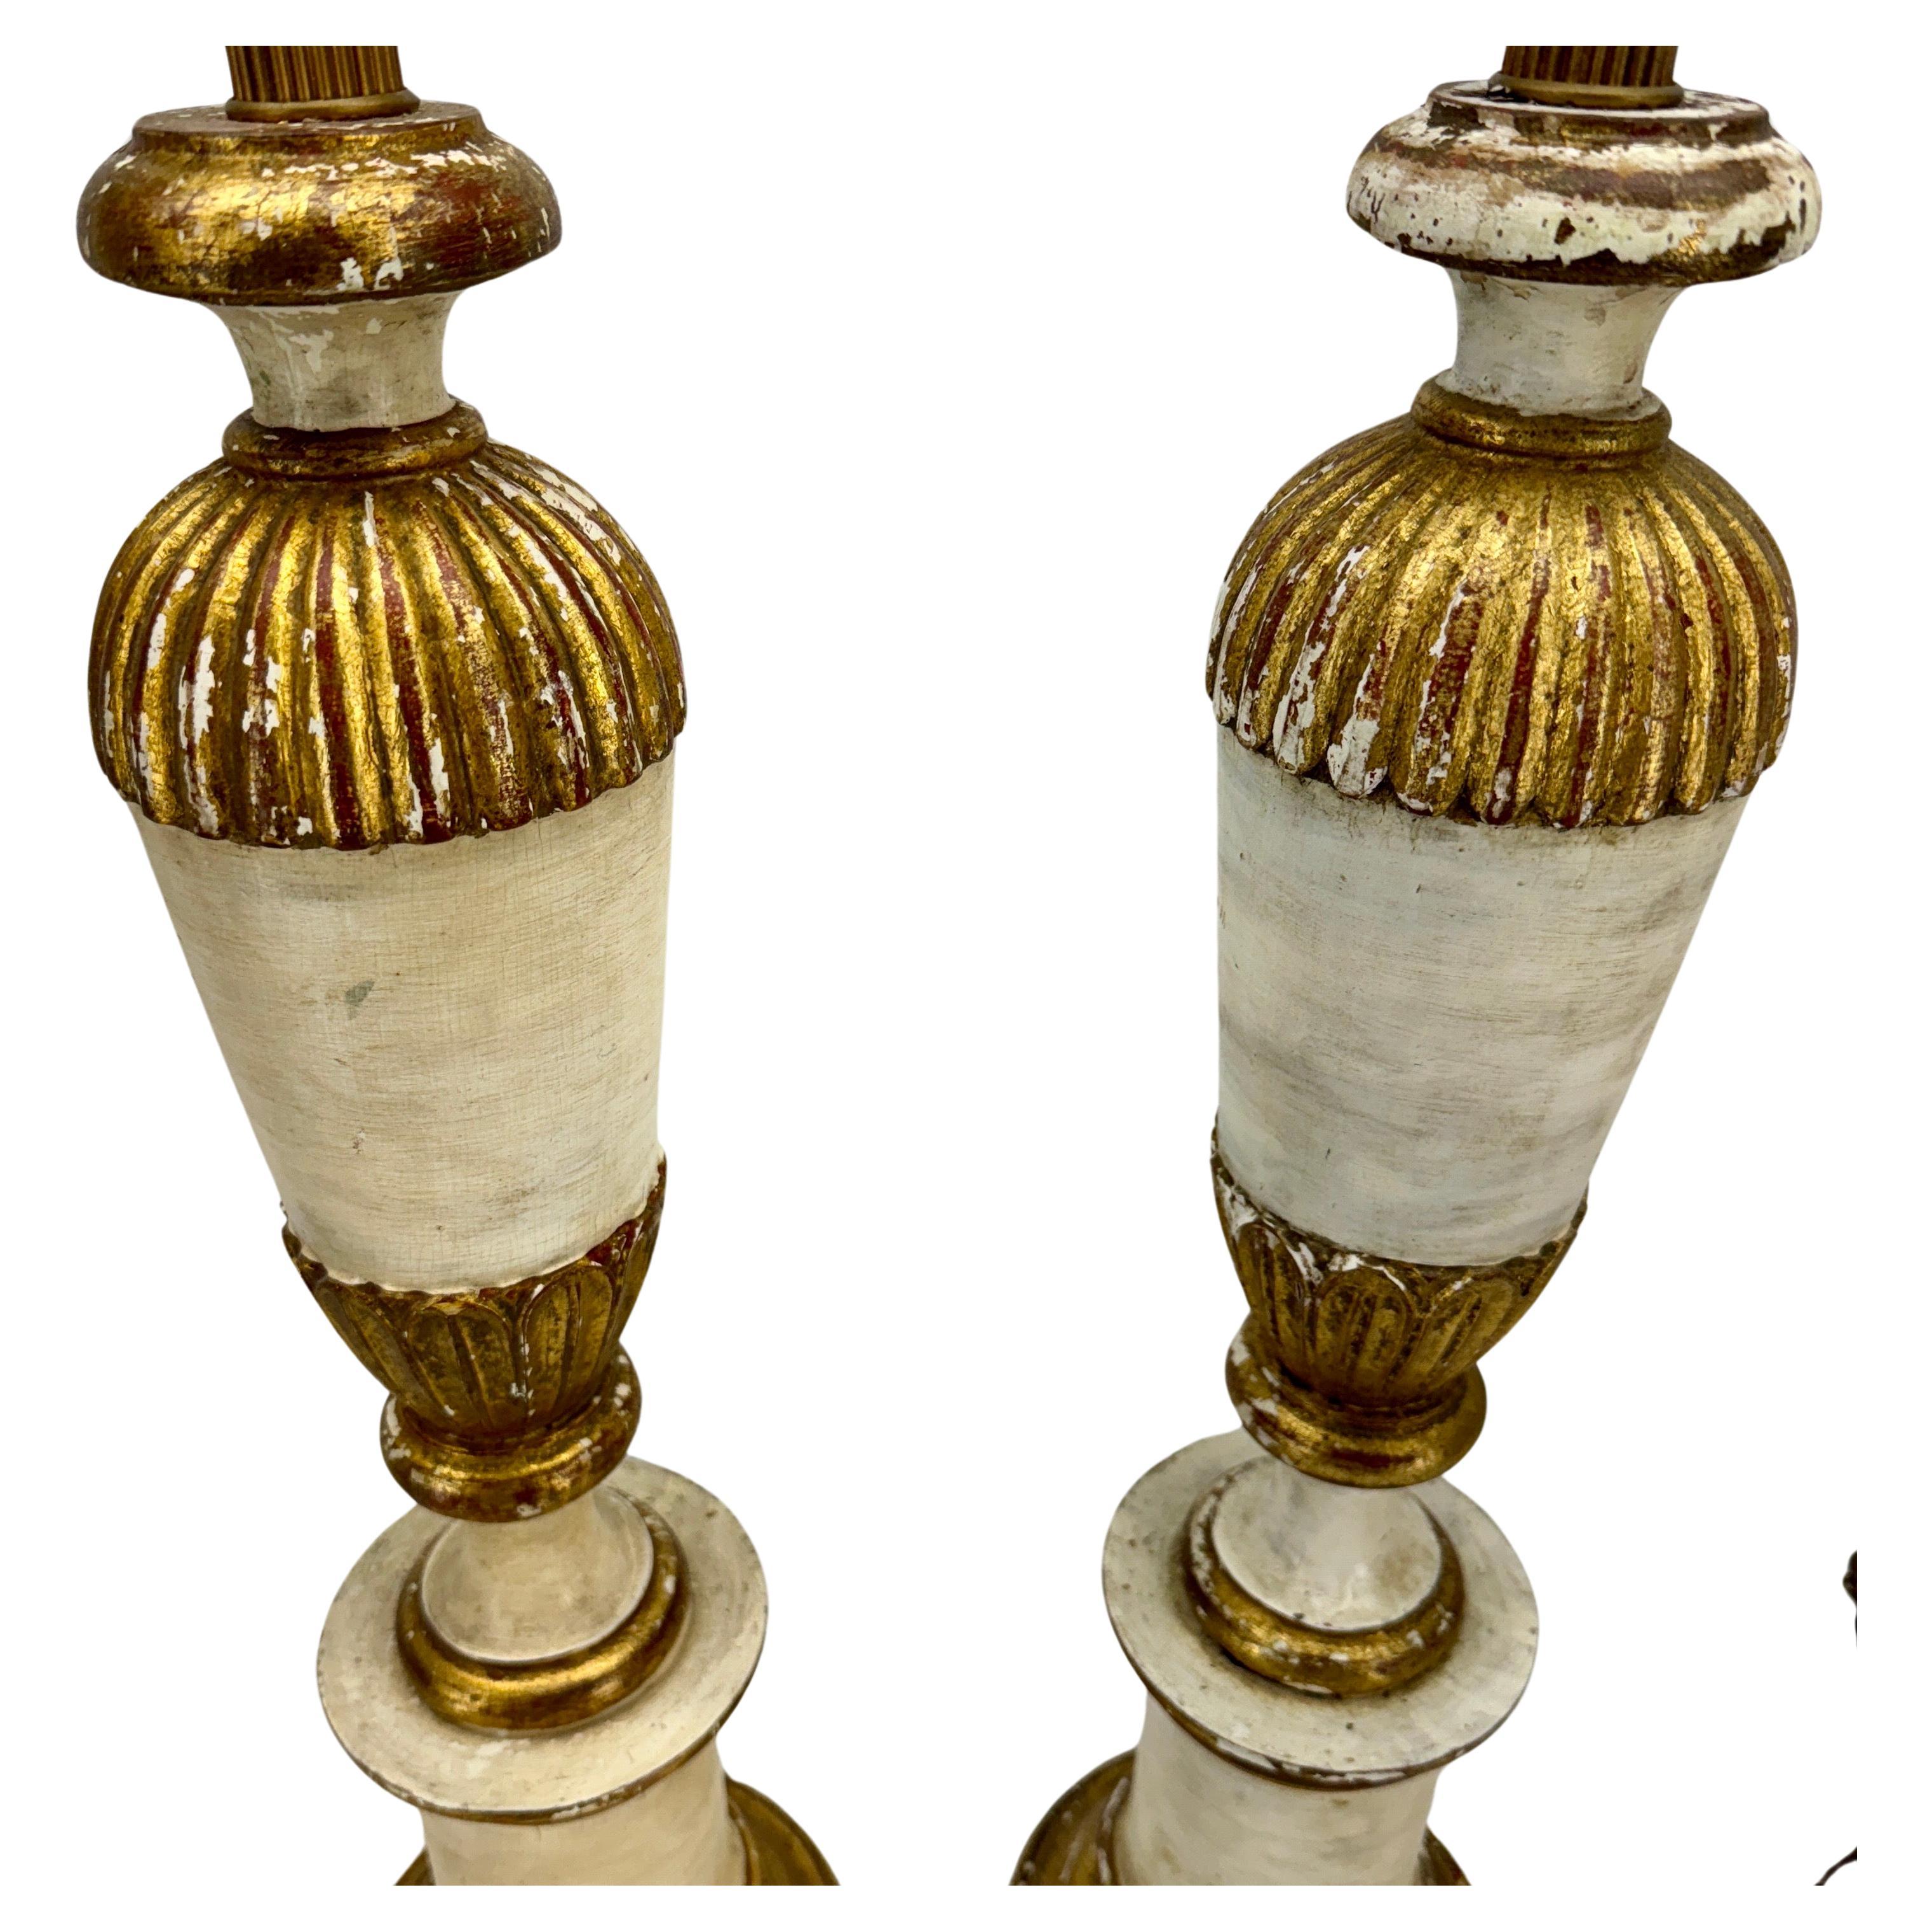 Paire de lampes de table italiennes du milieu du siècle en bois peint et doré

Fantastique paire de lampes vintage crème et or doré avec patine d'origine. Fabriquée en Italie dans les années 1950, cette paire serait élégante pour décorer une